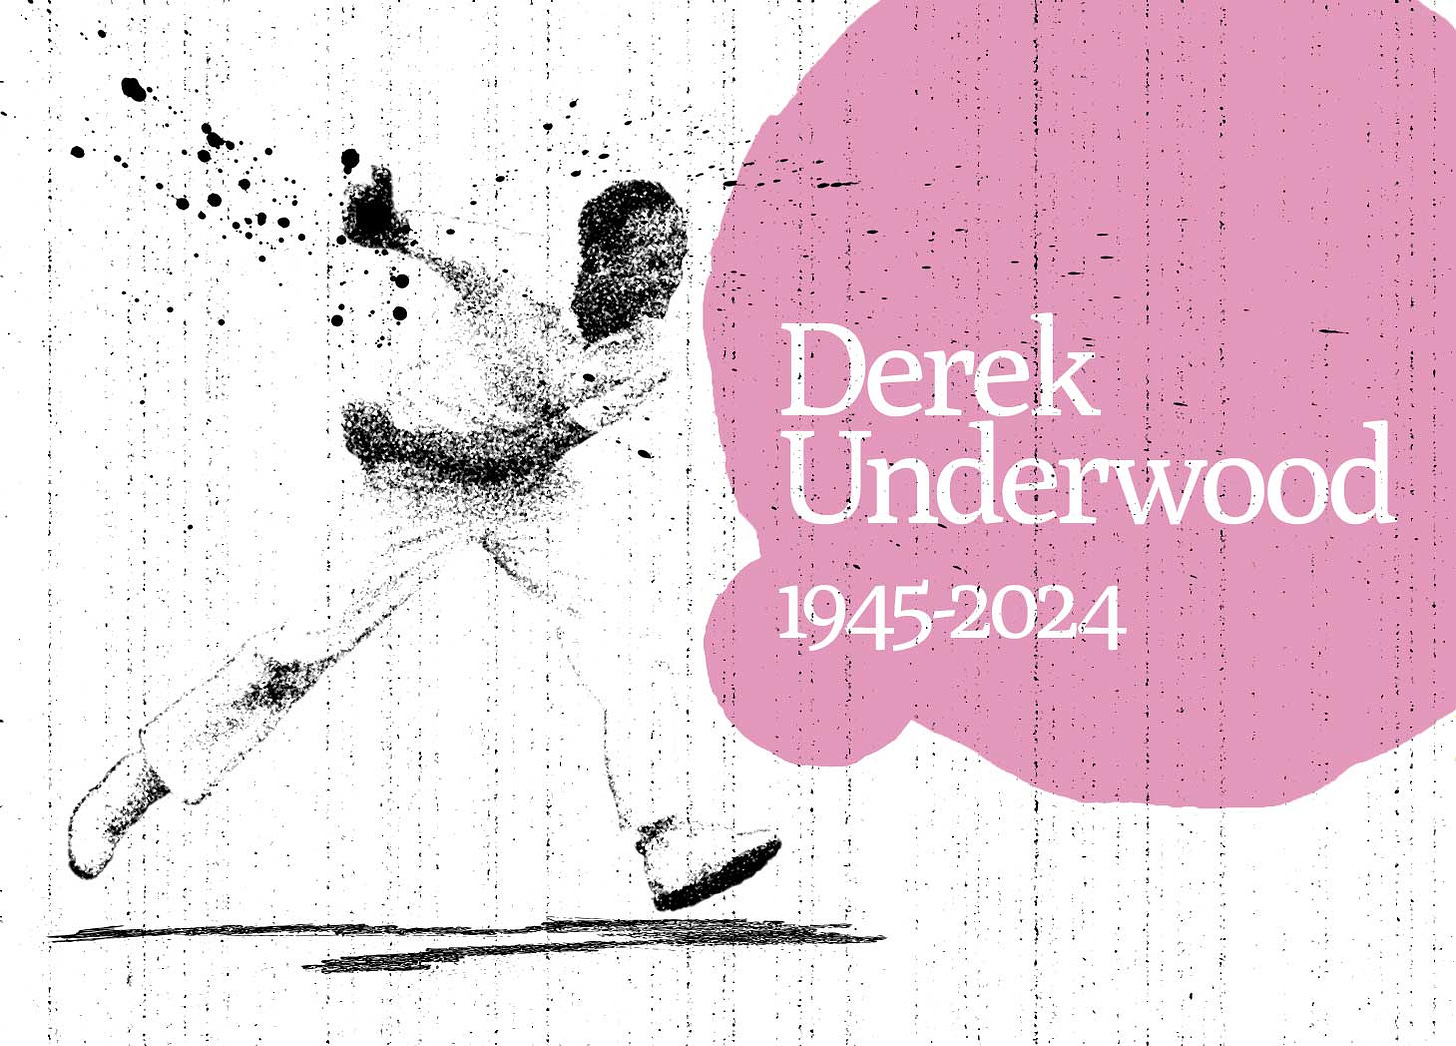 Derek Underwood Cricket Et Al Fisher Classics